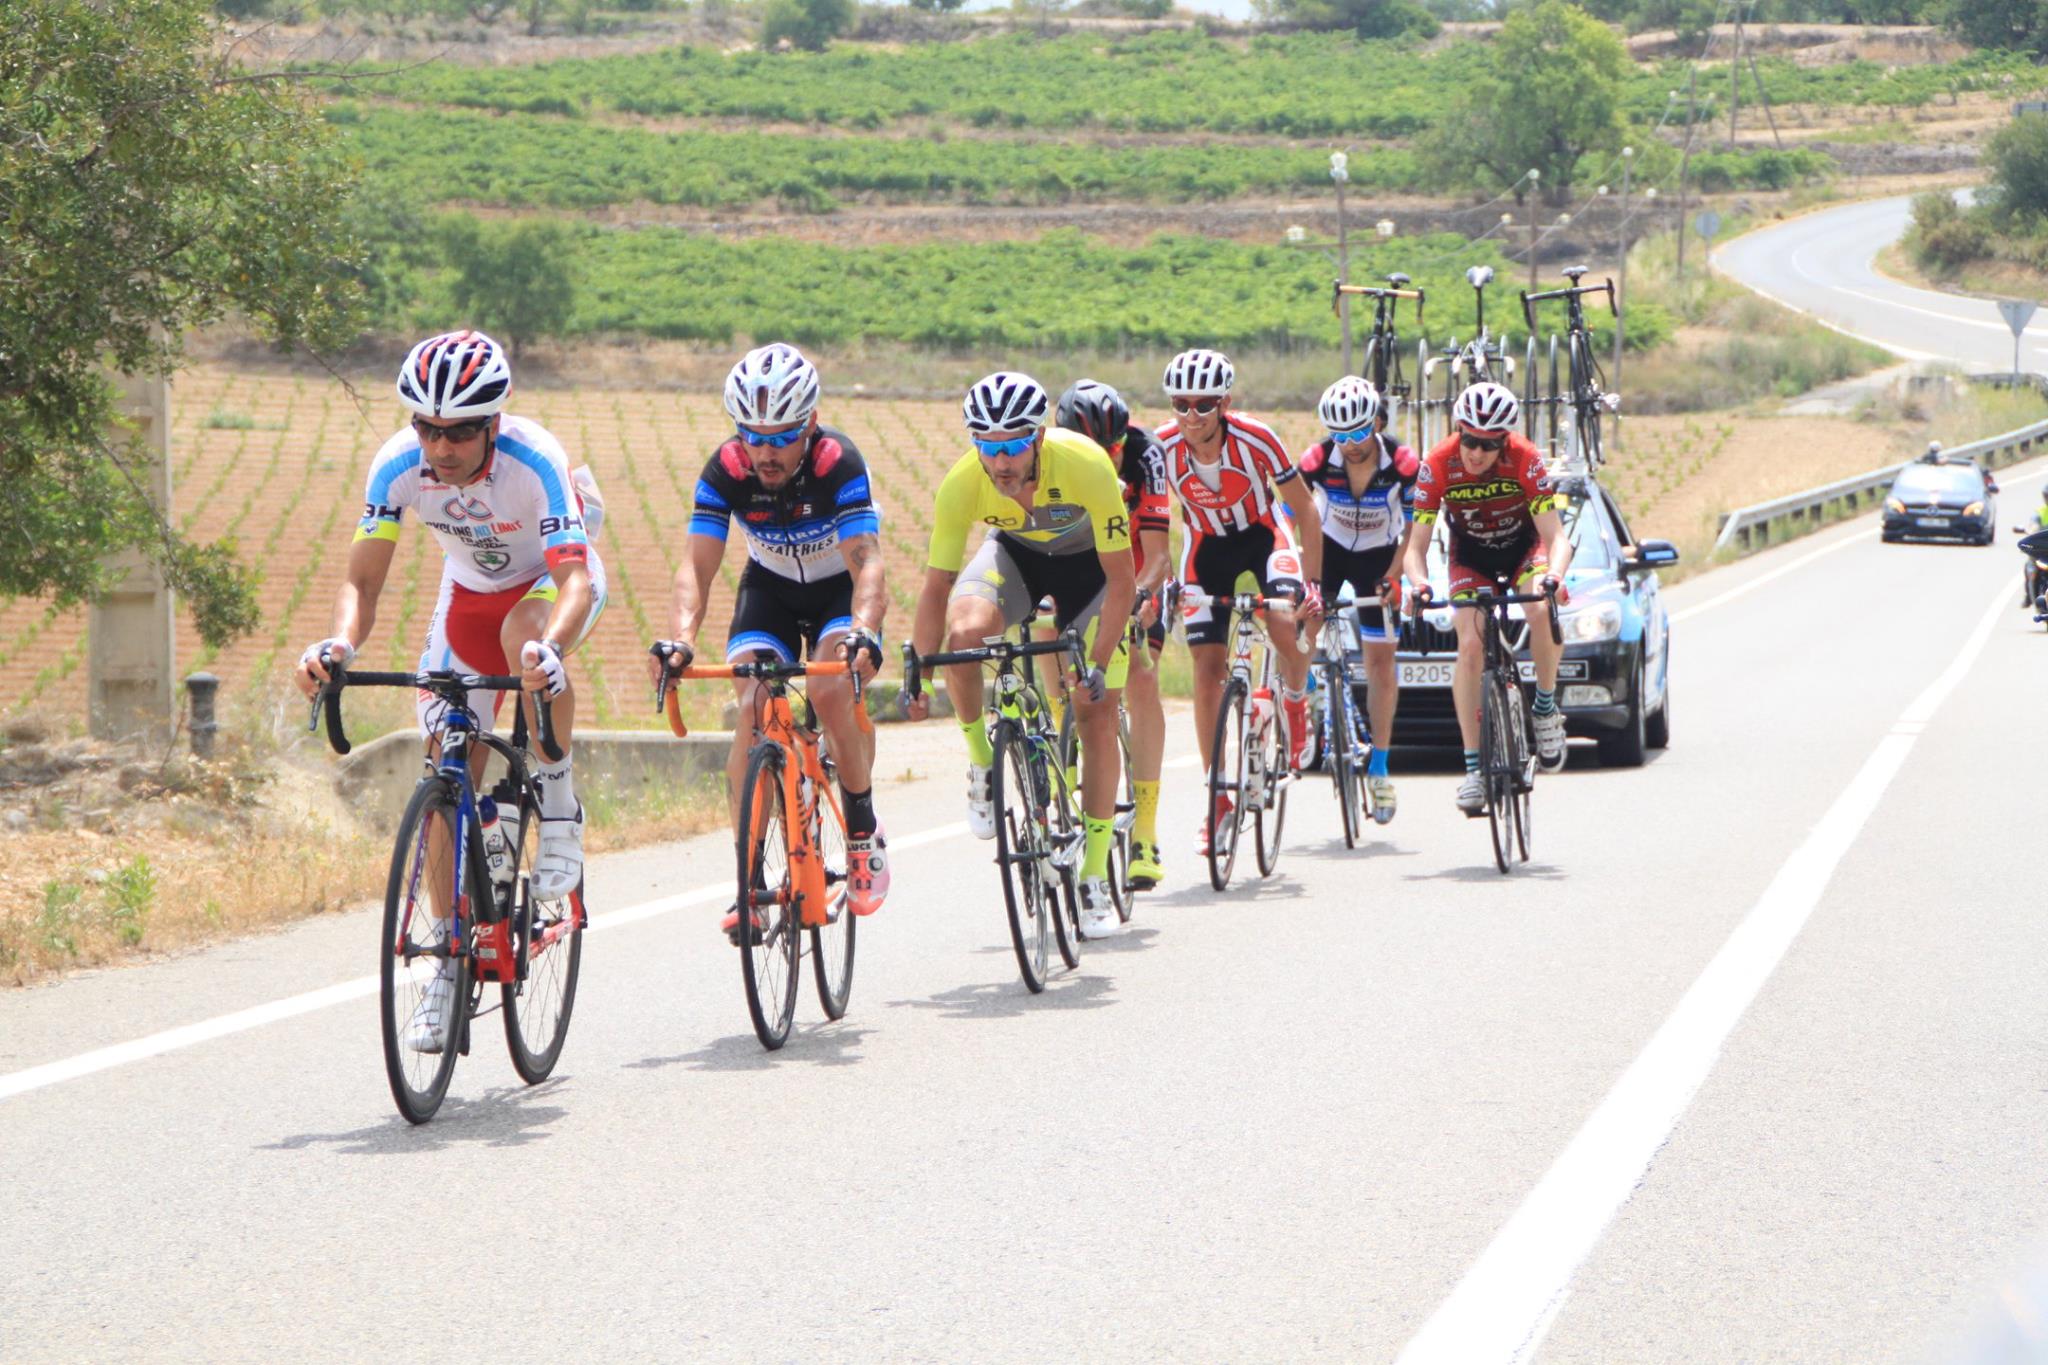 Torna la cronoescalada al Castell d’Escornalbou a la Volta Ciclista Tarragona